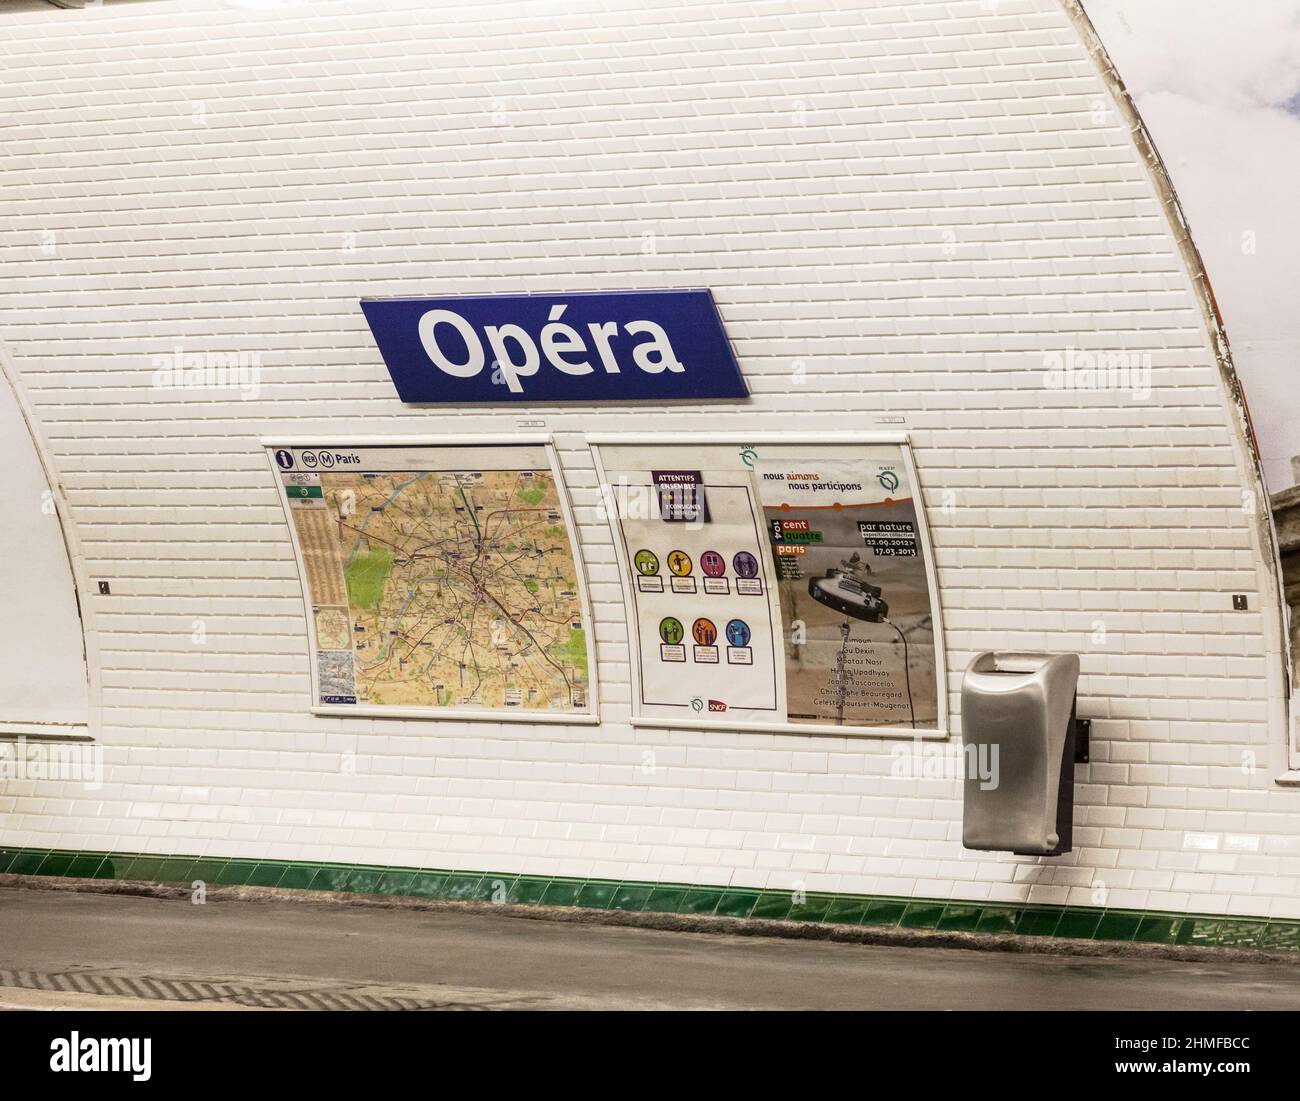 Interior de la estación de metro Opéra en el centro de París, Francia. Mapa de París con el metro, letreros y una fuente de agua potable. Metro STY Foto de stock